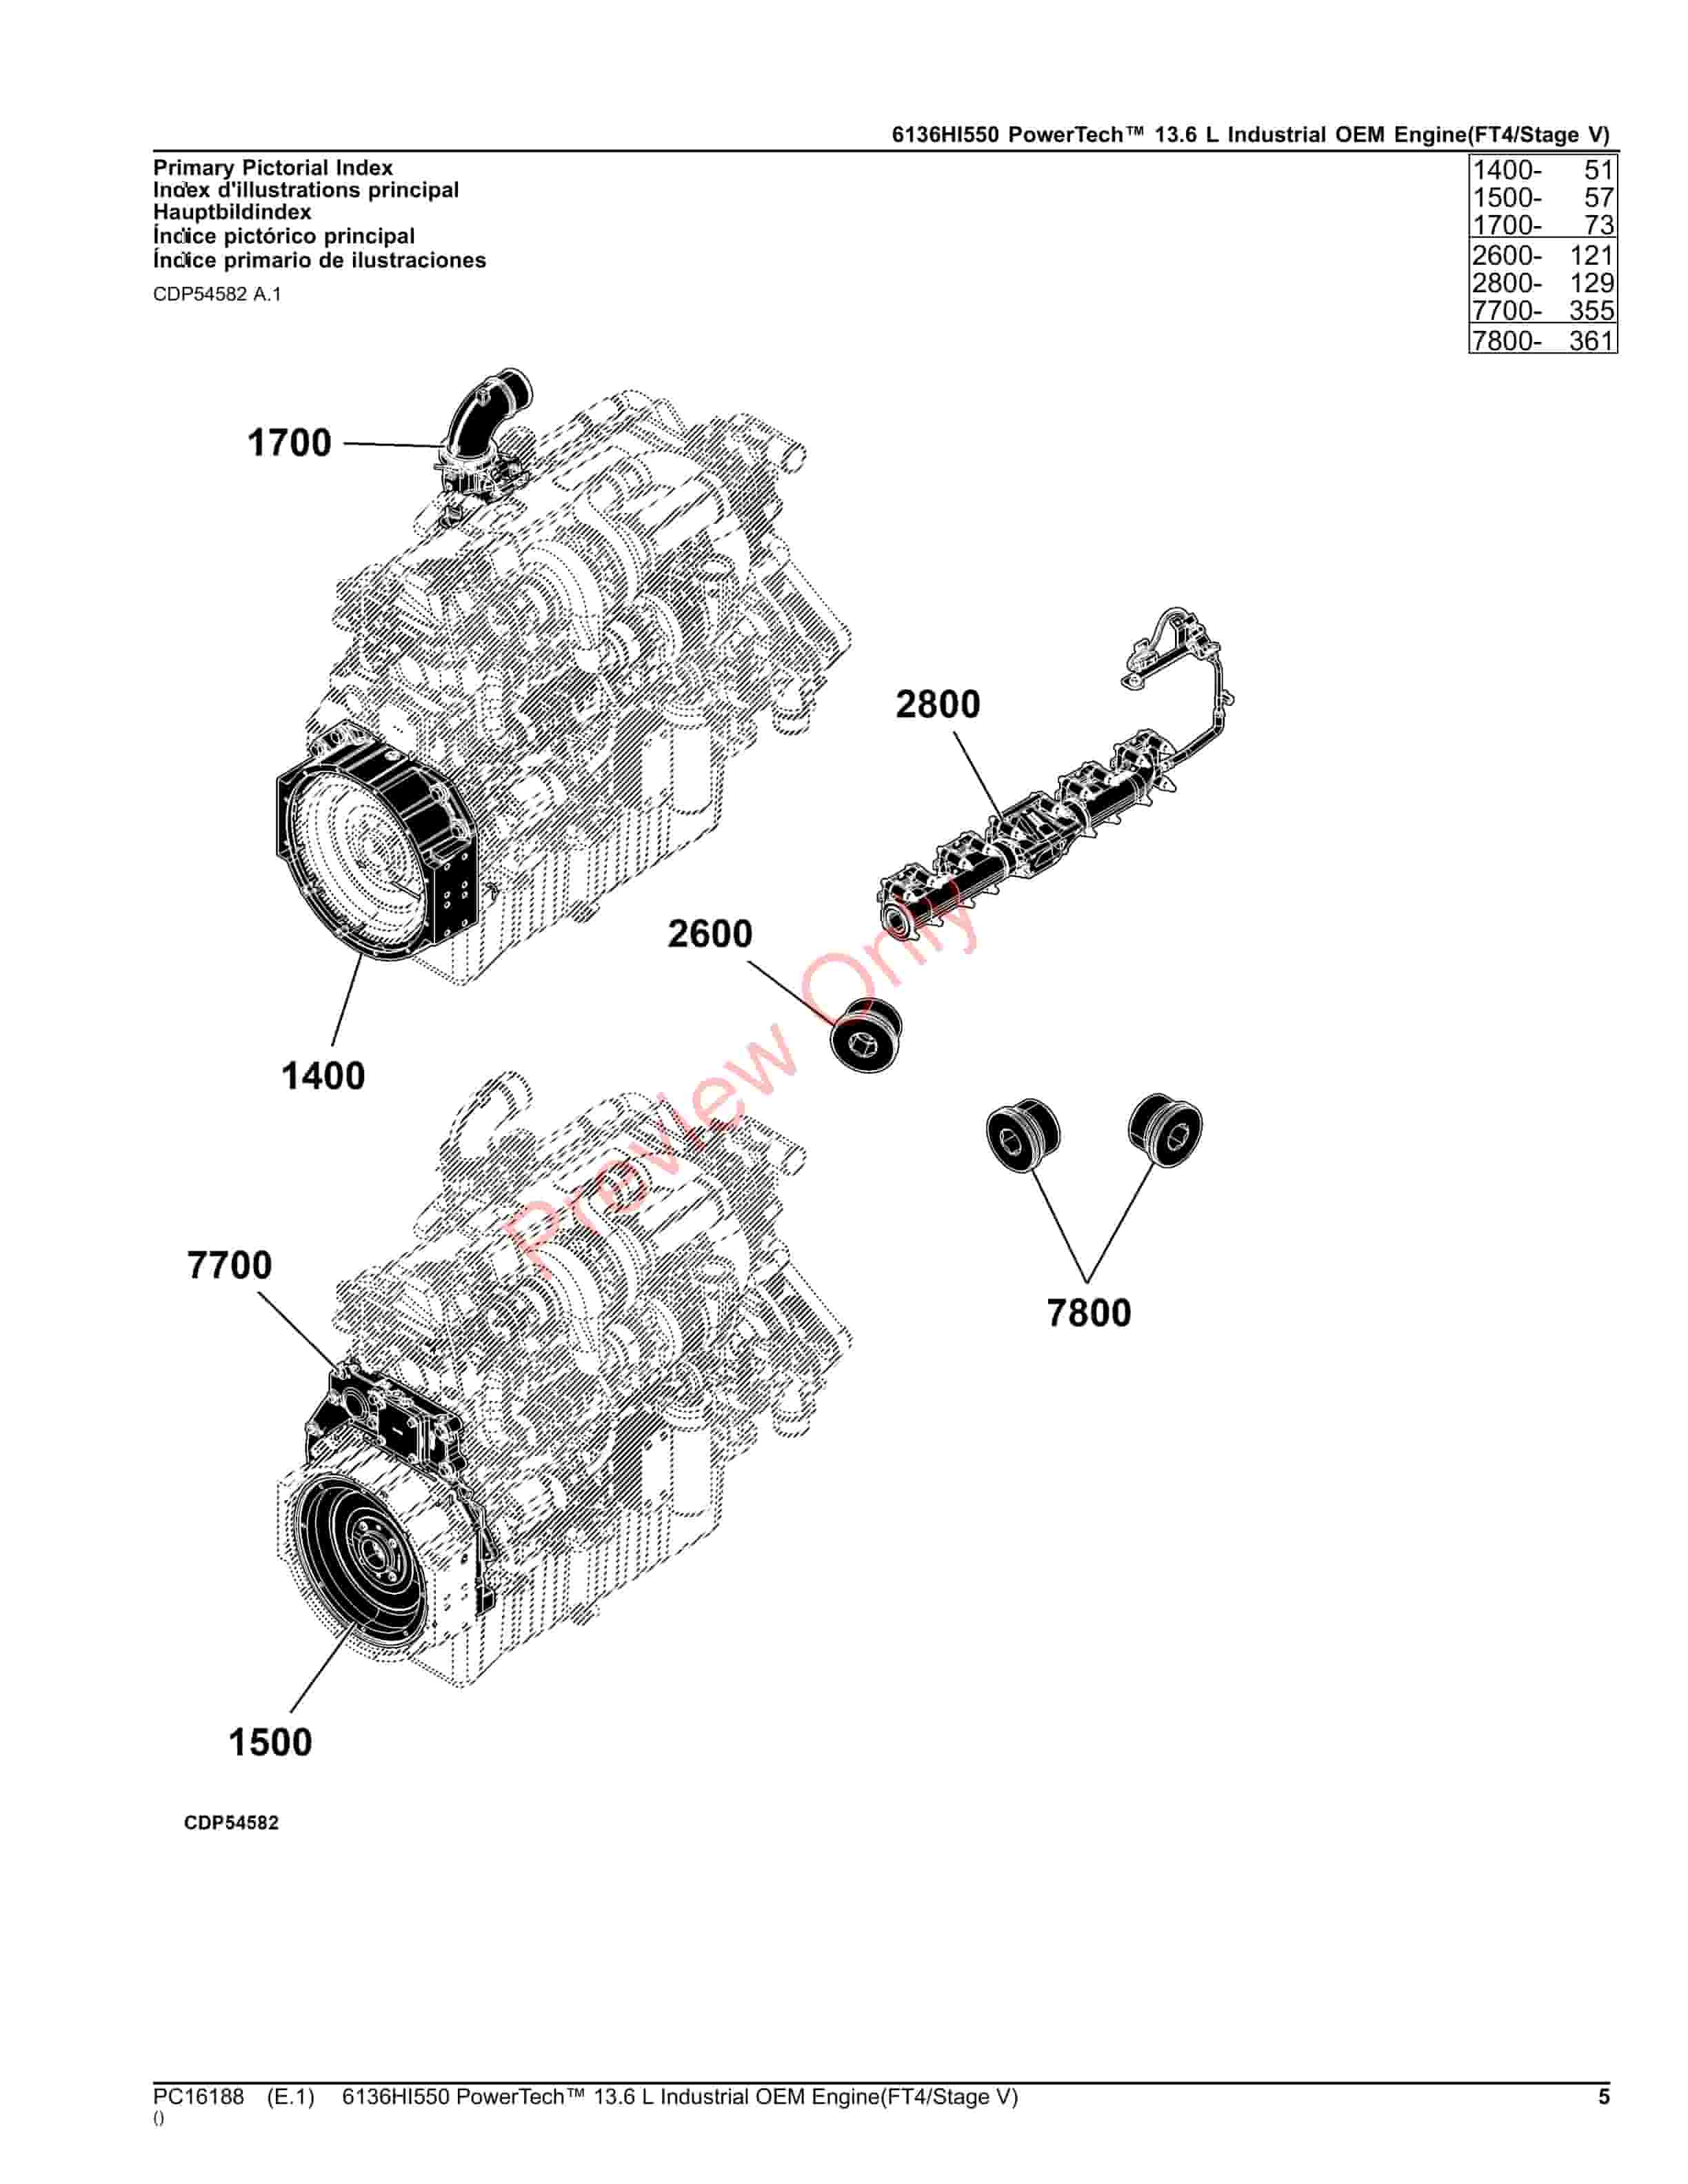 John Deere 6136HI550 PowerTech 13.6 L Industrial OEM Engine(FT4Stage V) Parts Catalog PC16188 20JUL23-5